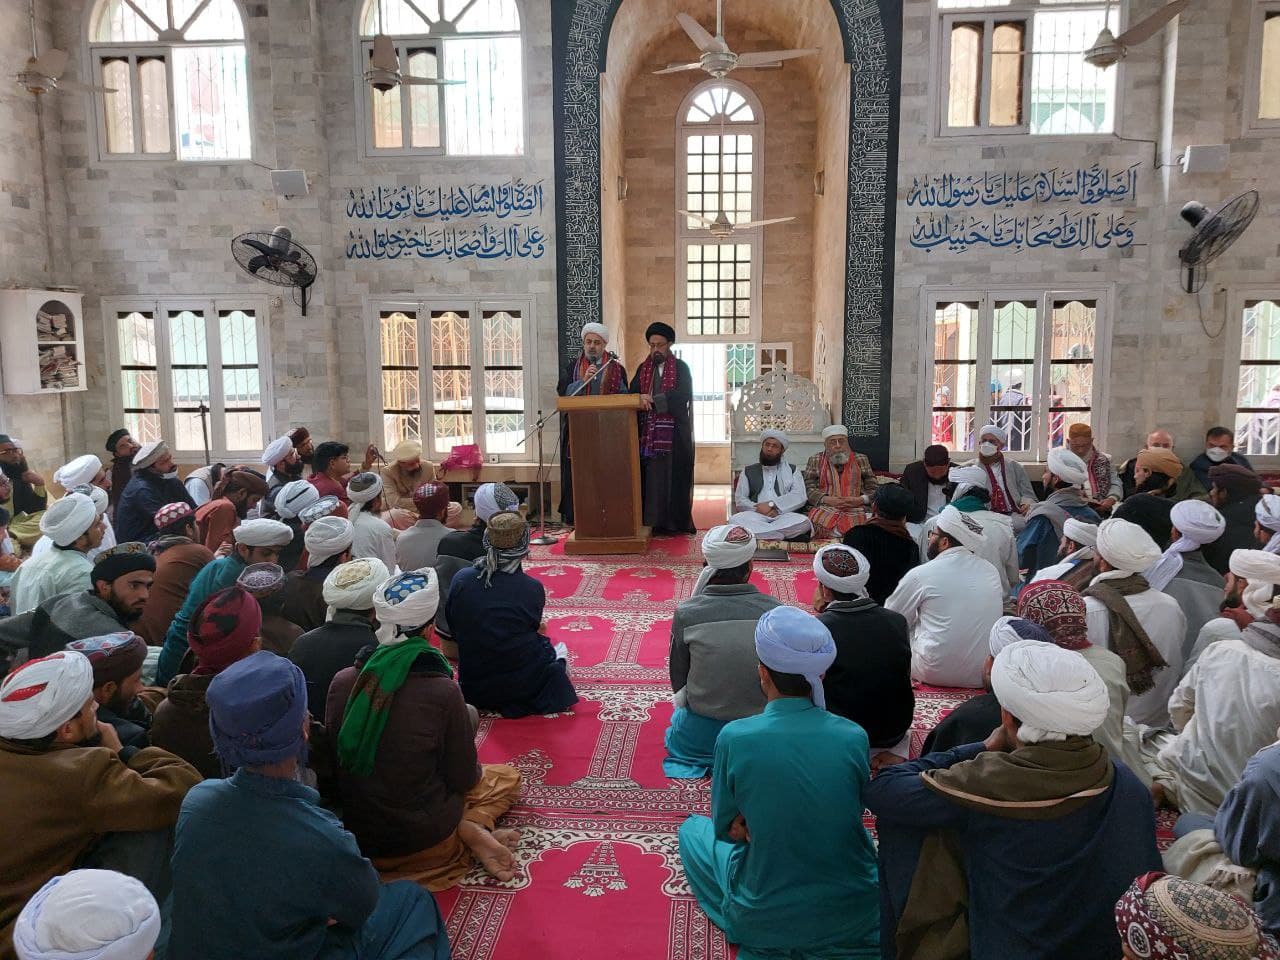 سخنرانی دبیرکل مجمع تقریب در مسجد دارالعلوم مجددیه نعیمیه